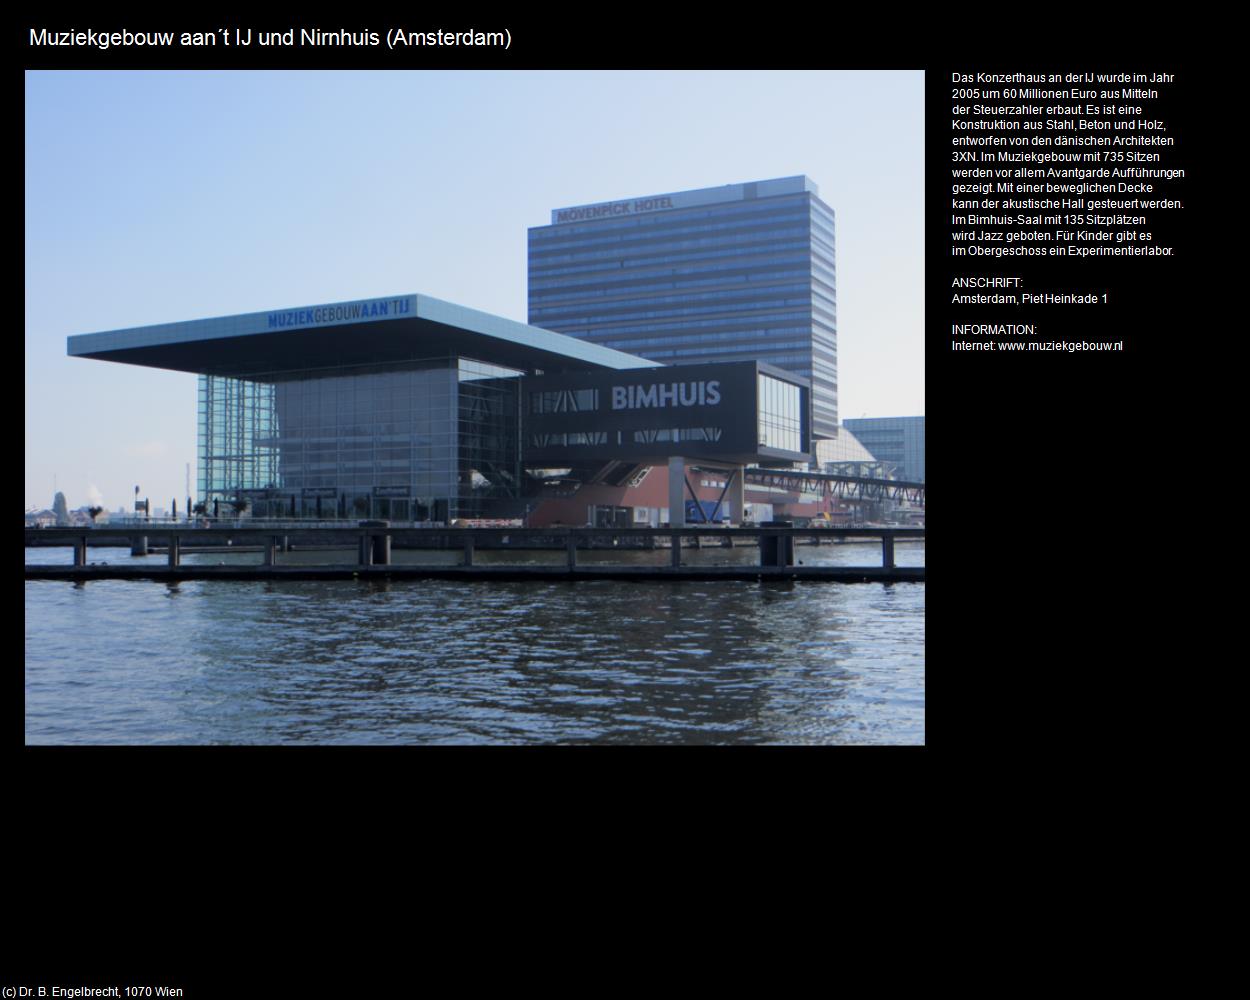 Muziekgebouw aan‘t IJ und Nirnhuis (Amsterdam) in Kulturatlas-NIEDERLANDE